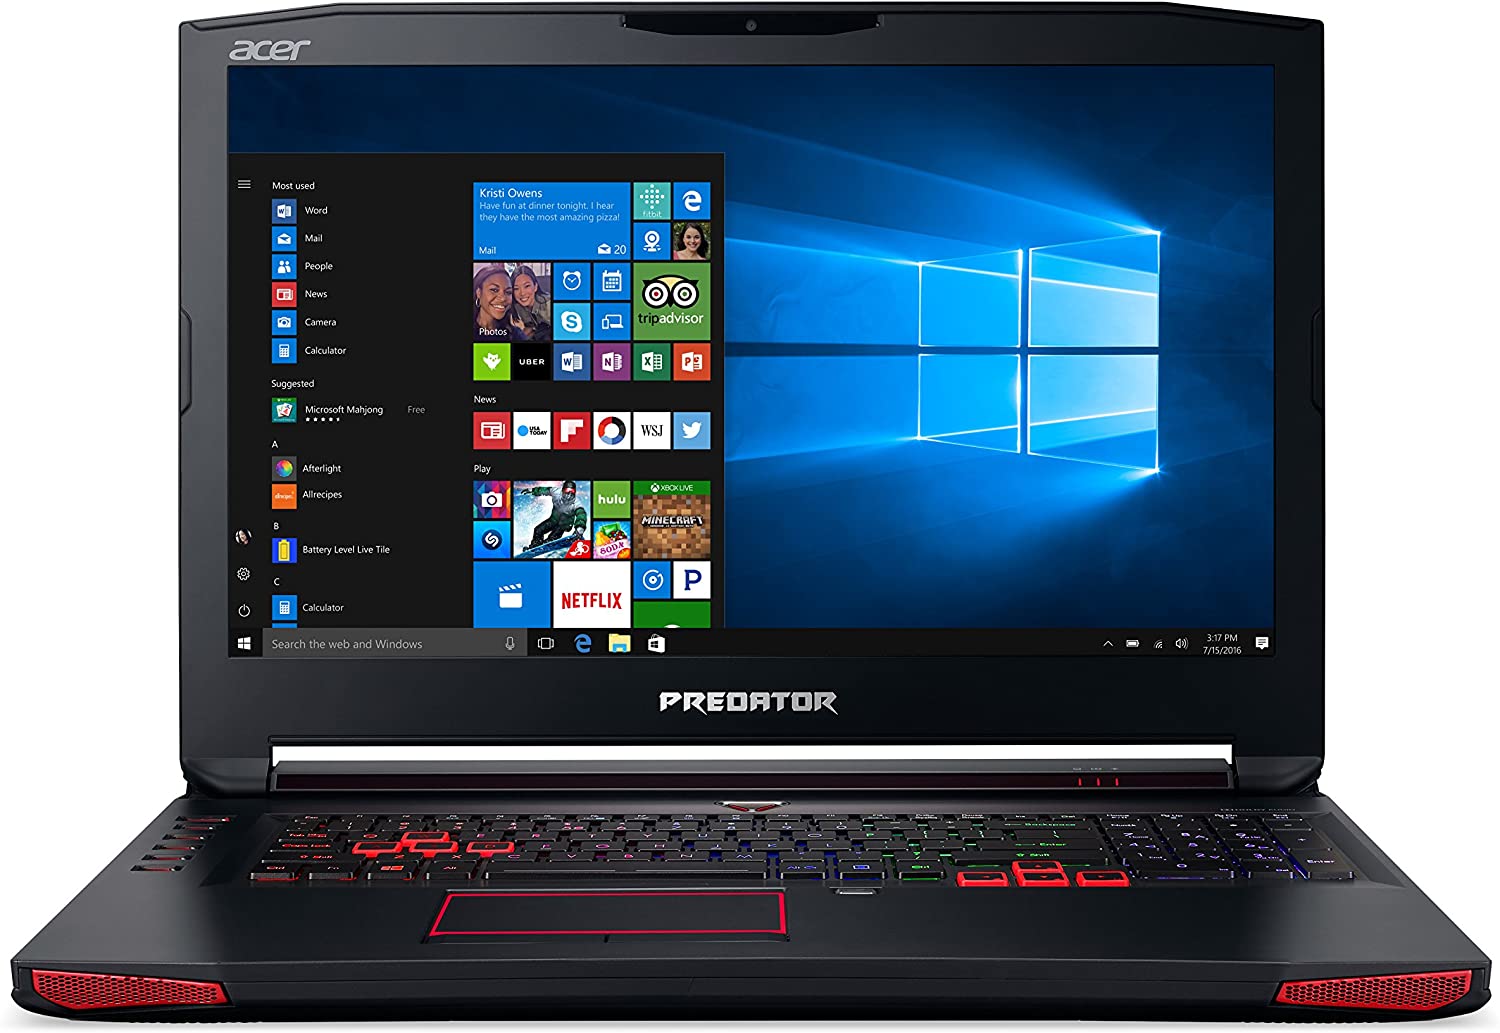 Acer Predator 17 Gaming Laptop, Core i7, GeForce GTX 1070